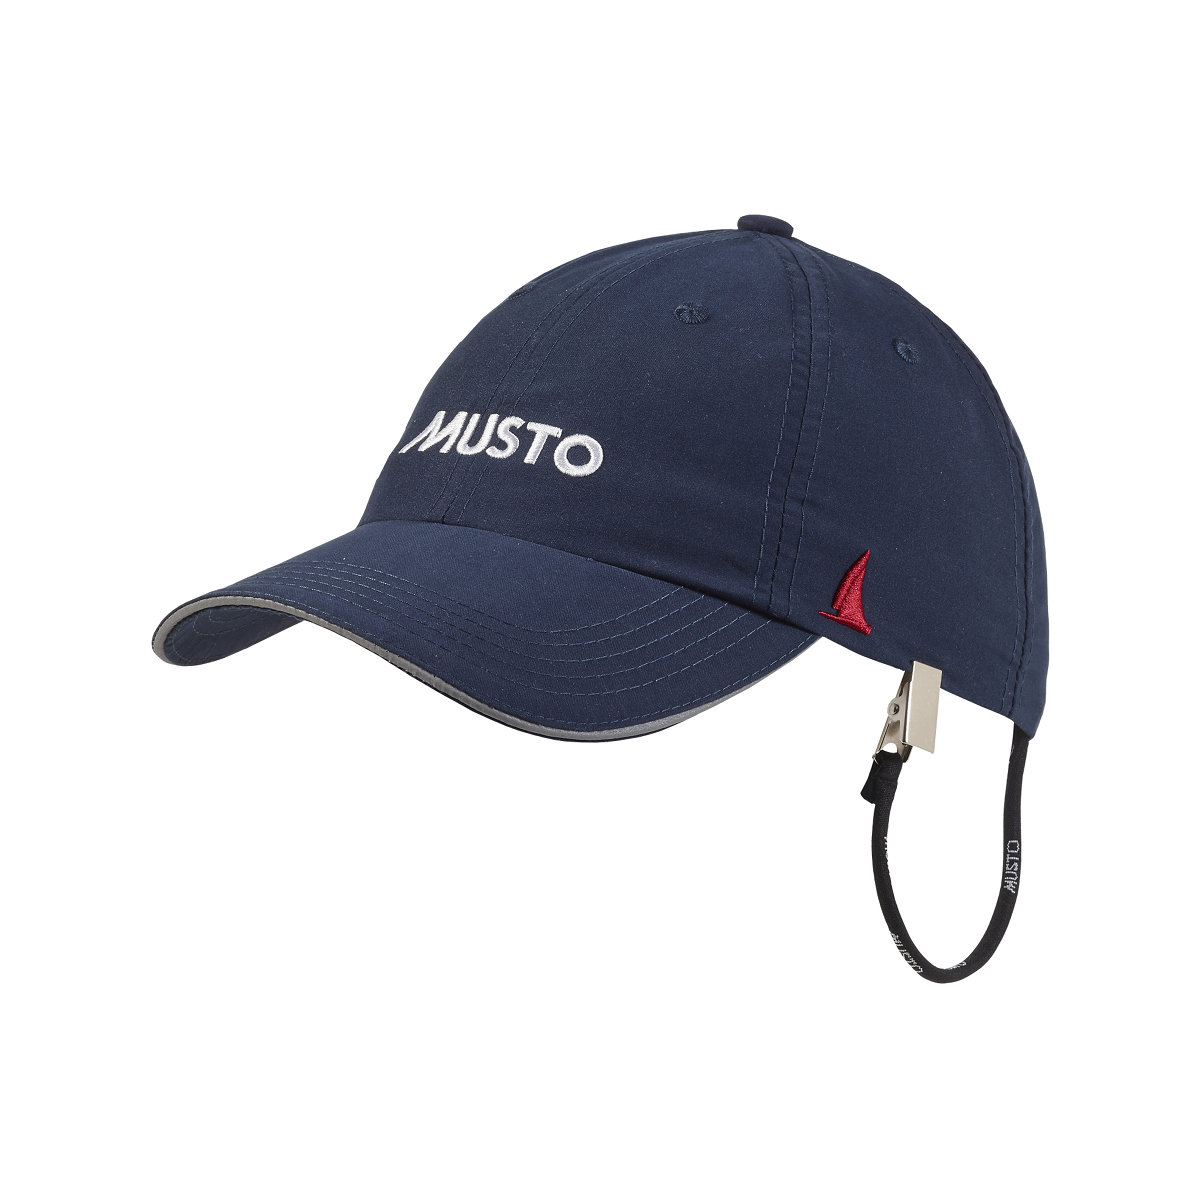 Musto Evo Fast Dry casquette voile bleu marine